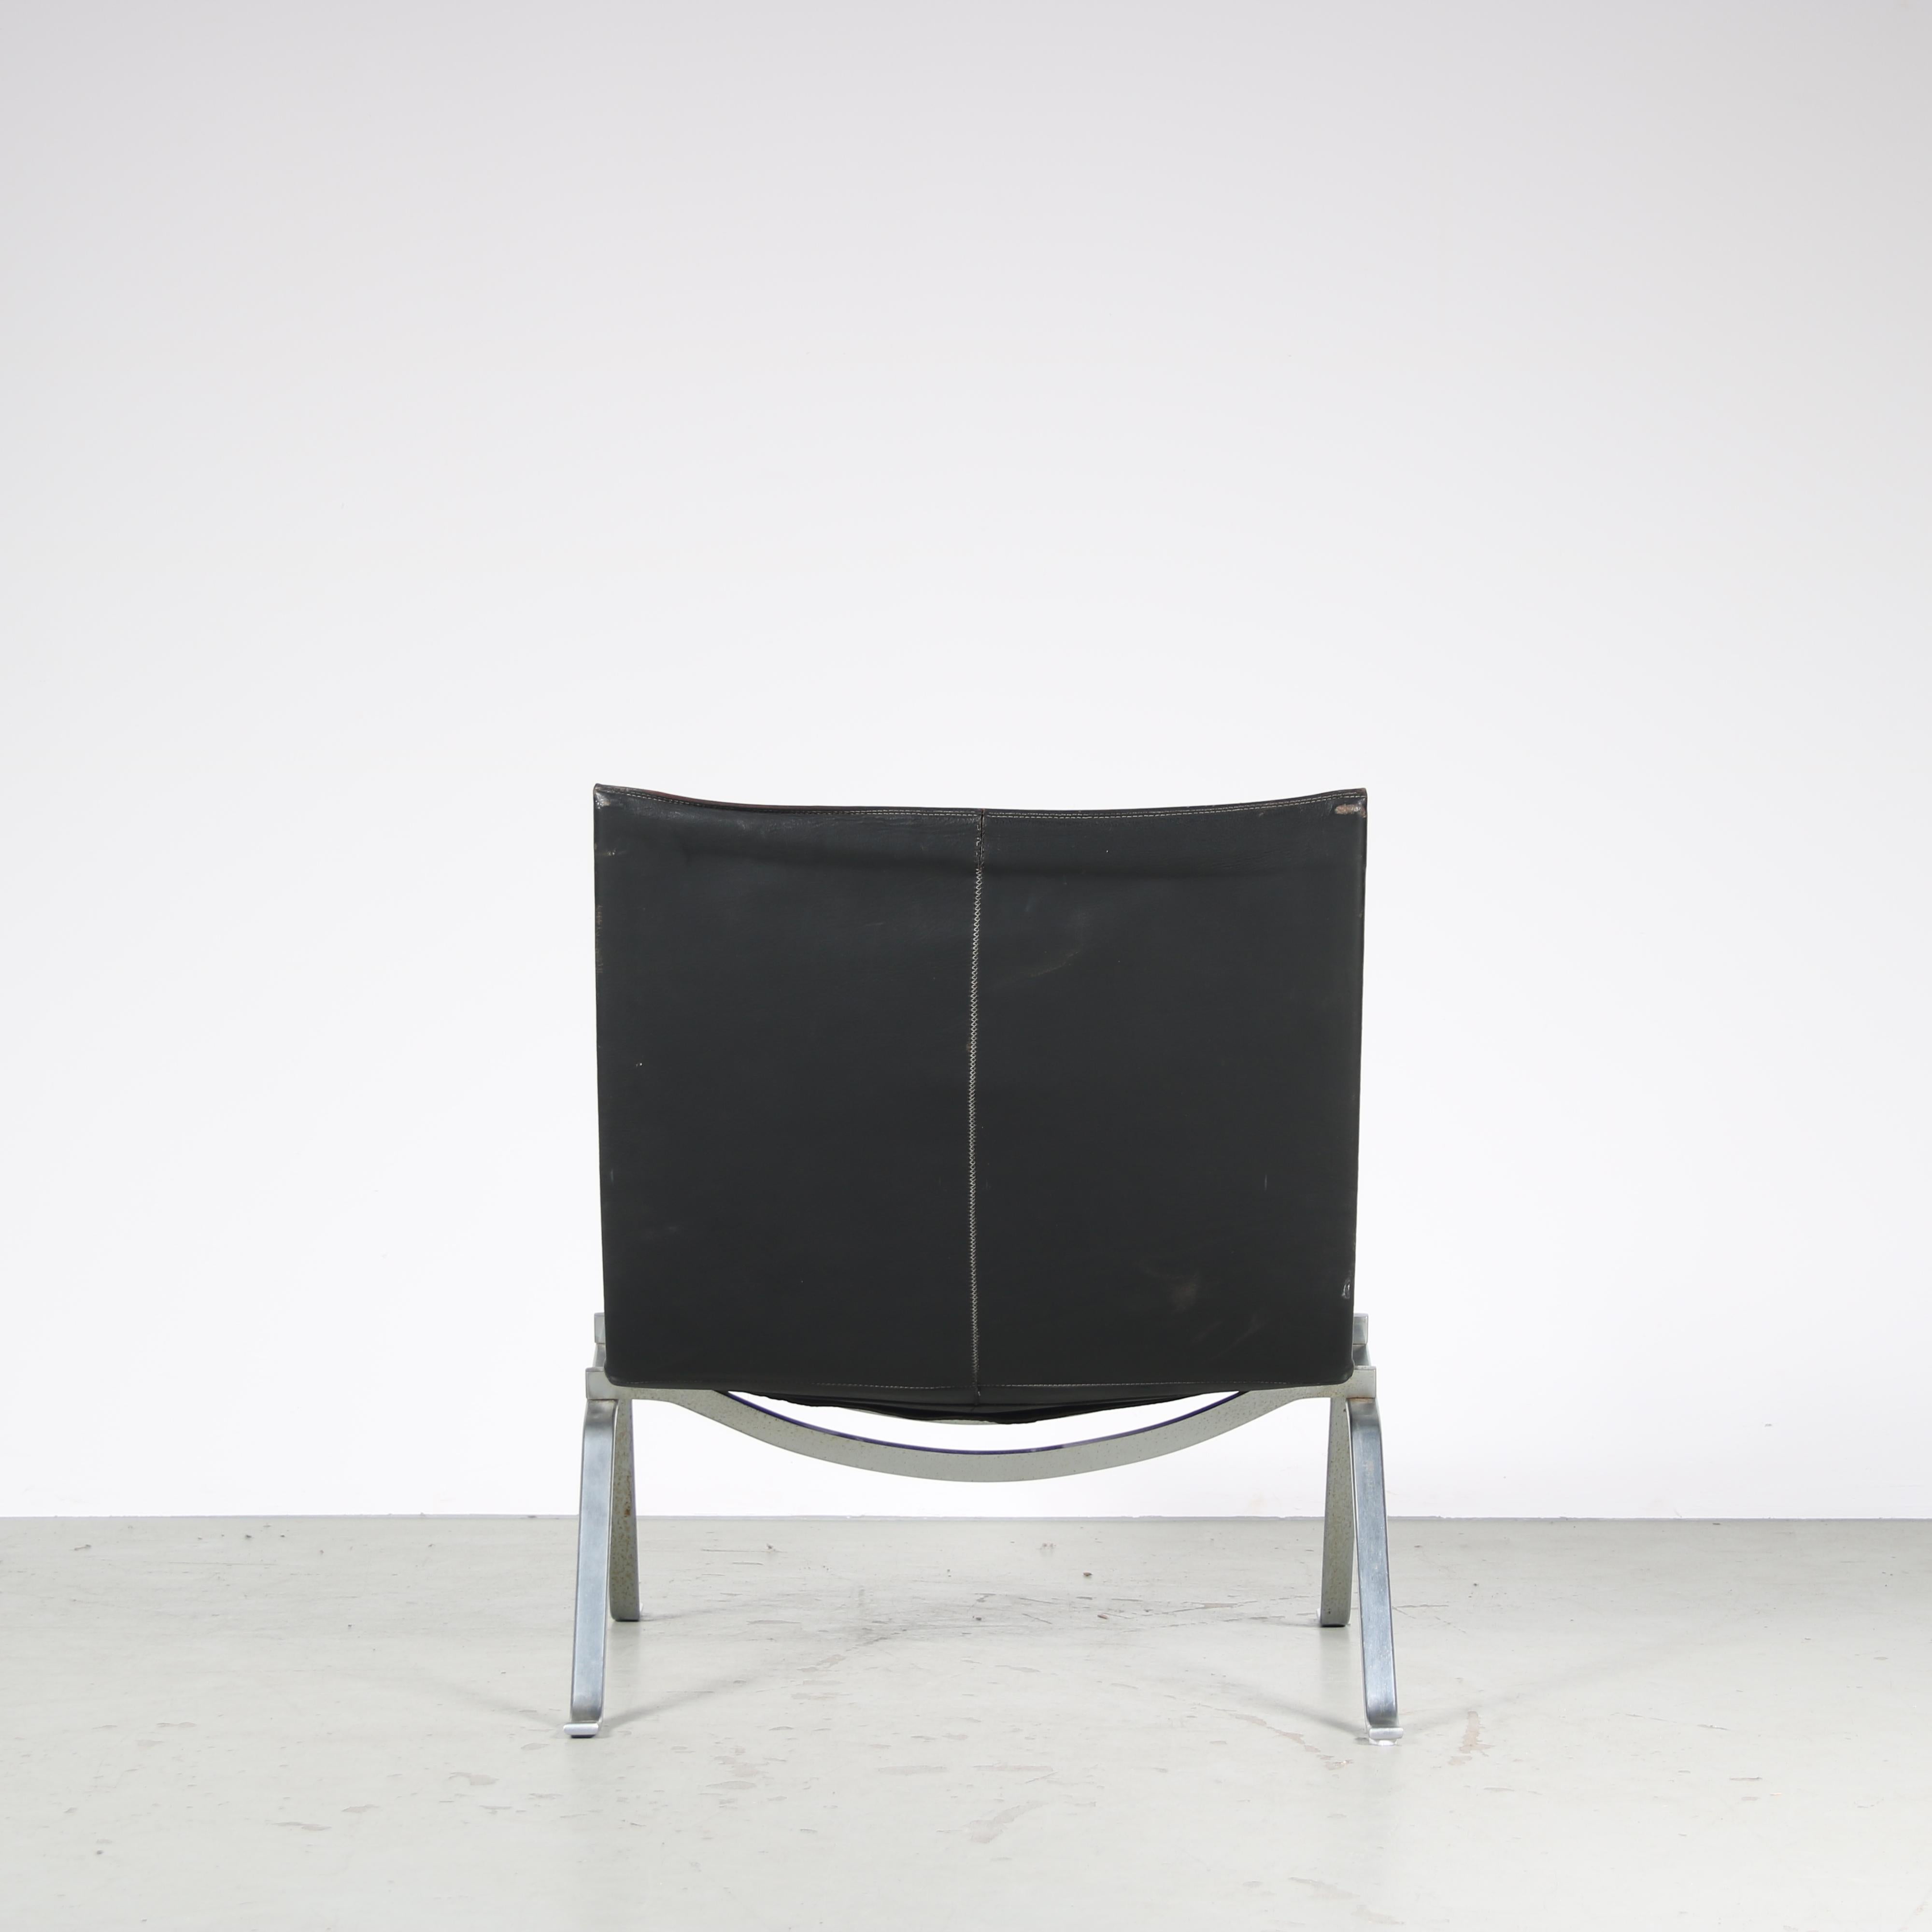 PK22 Chairs by Poul Kjaerholm for Kold Christensen, Denmark 1960 For Sale 2